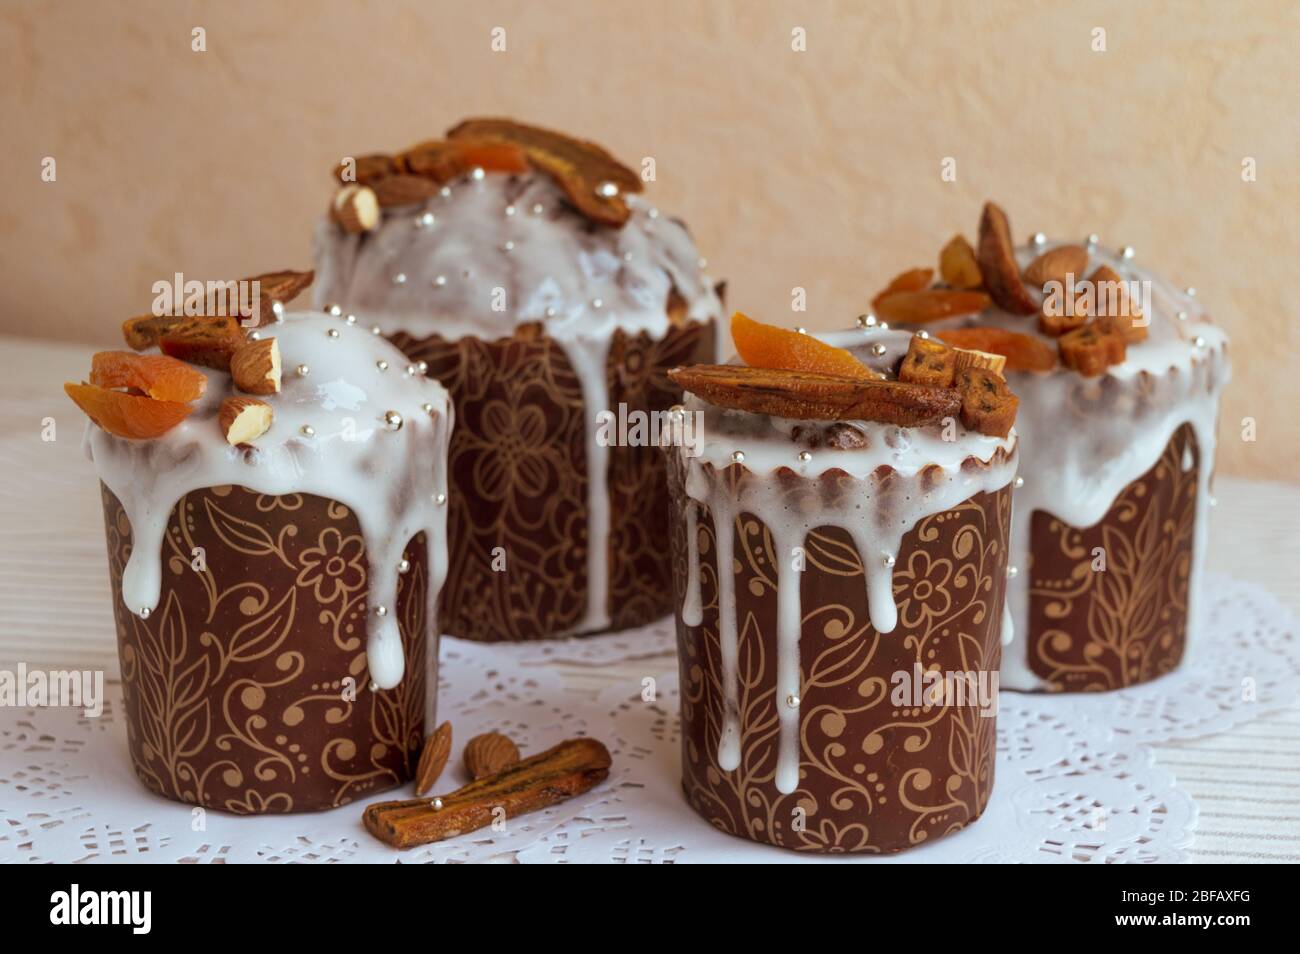 Délicieux gâteaux faits maison de Pâques ensemble à des serviettes blanches décorées de bananes séchées, abricots orange, amandes et petit élégant bebe de perle de sucre argent Banque D'Images